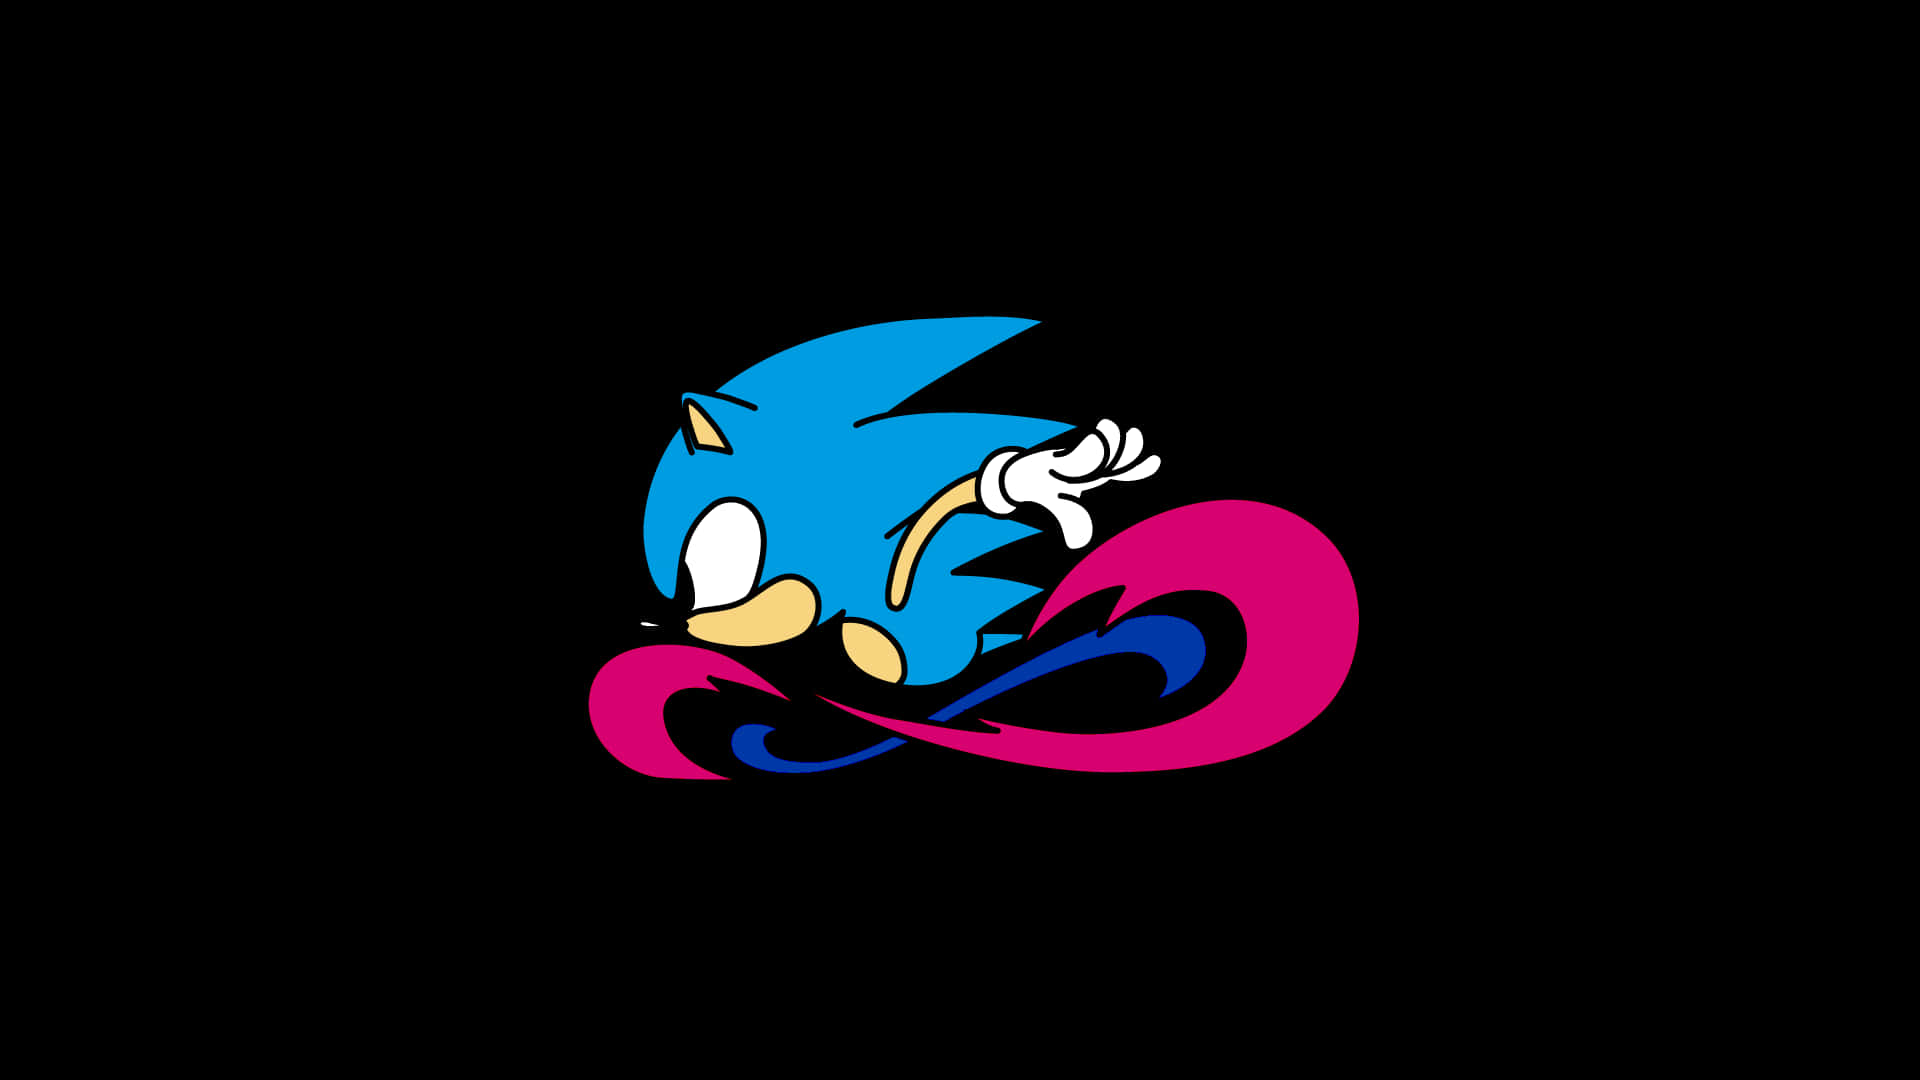 Vivil'esperienza Del Classico Viaggio Nelle Avventure Con Sonic The Hedgehog.